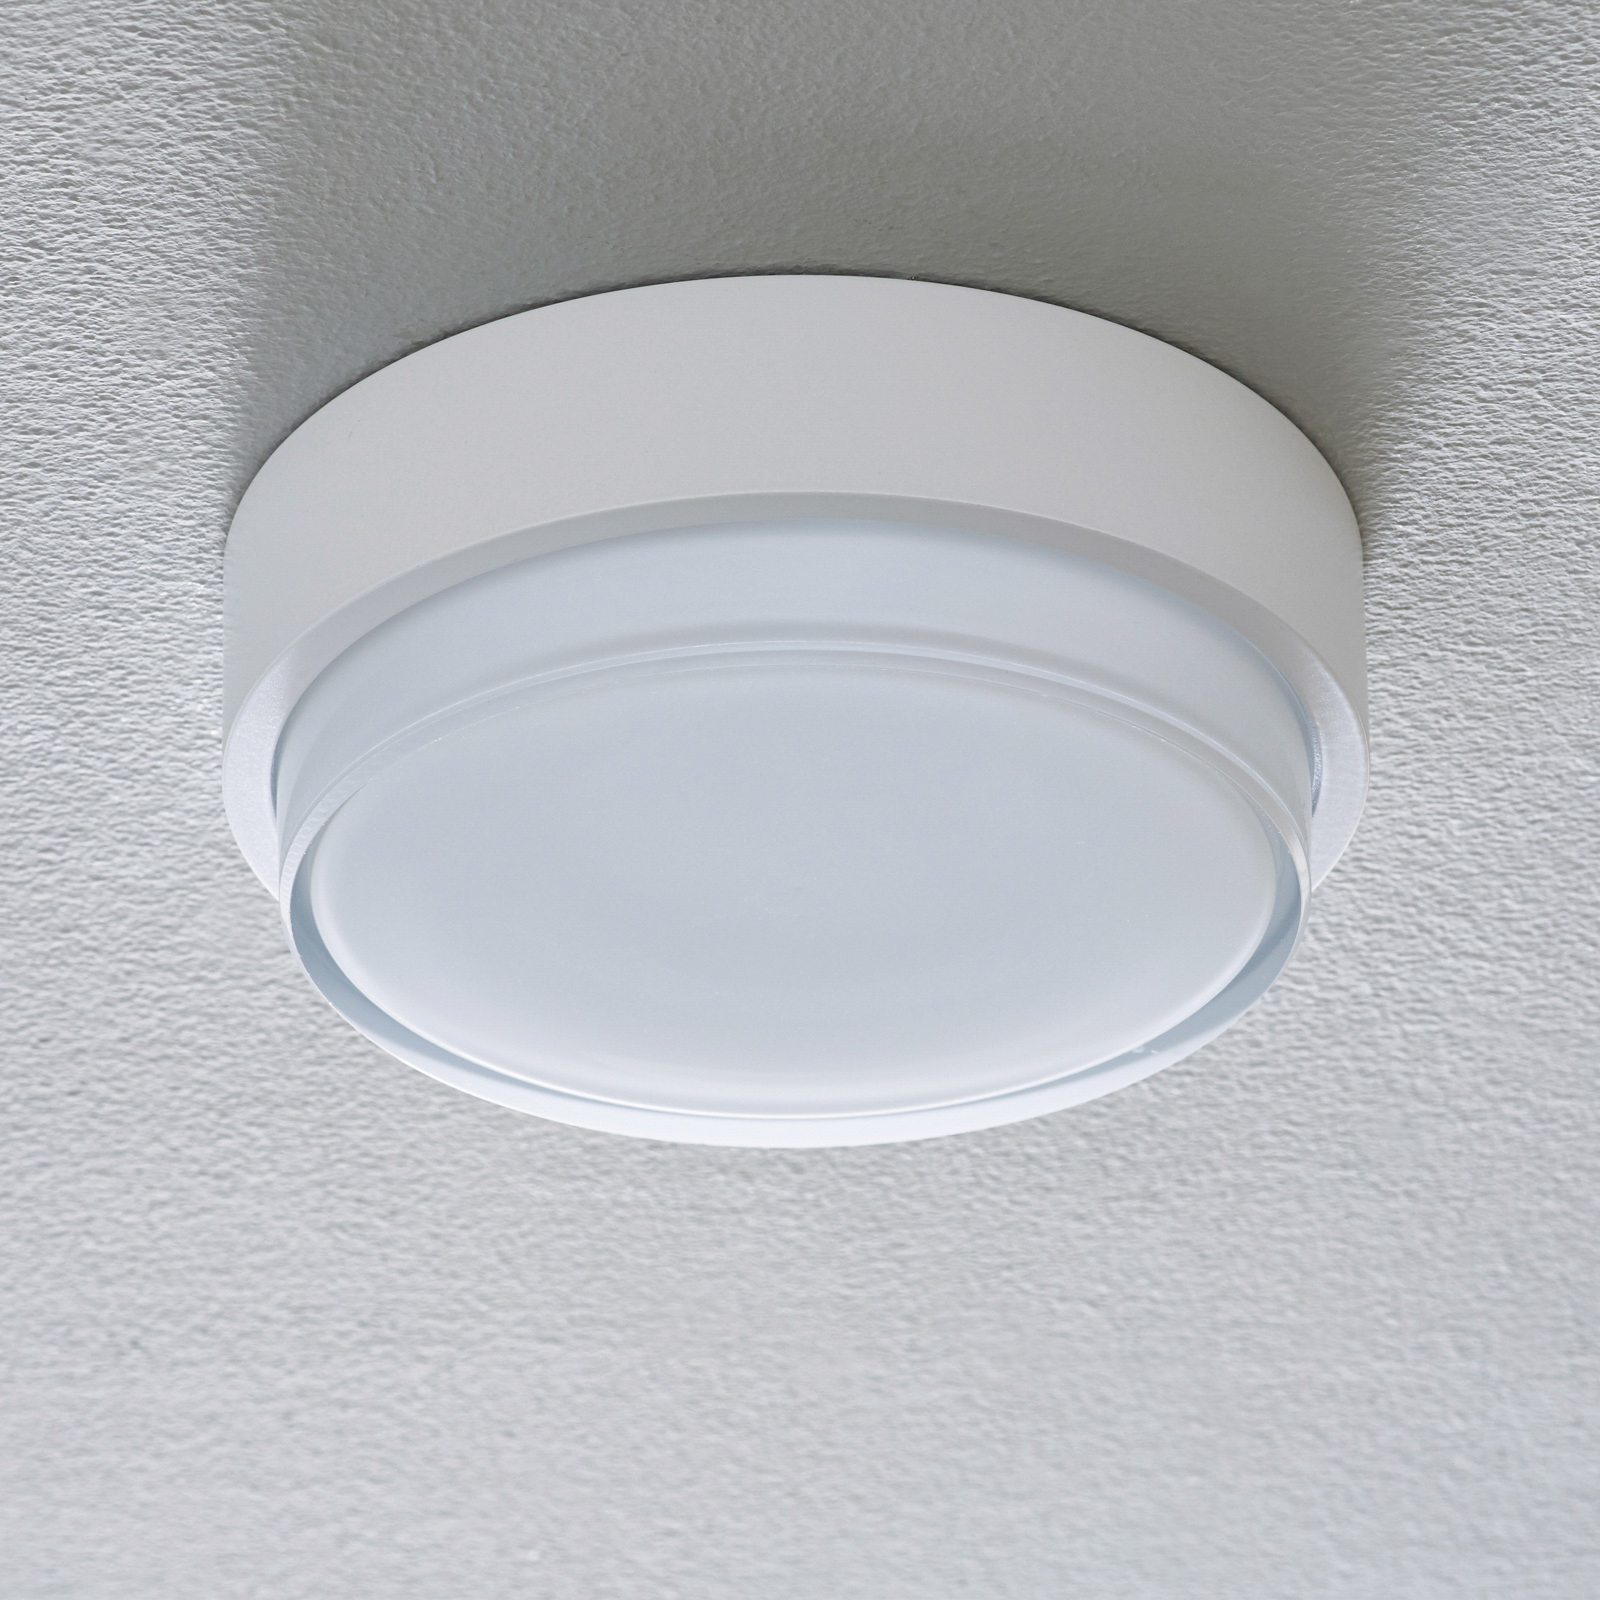 BEGA 50536 LED ceiling light 930 white Ø 21 cm